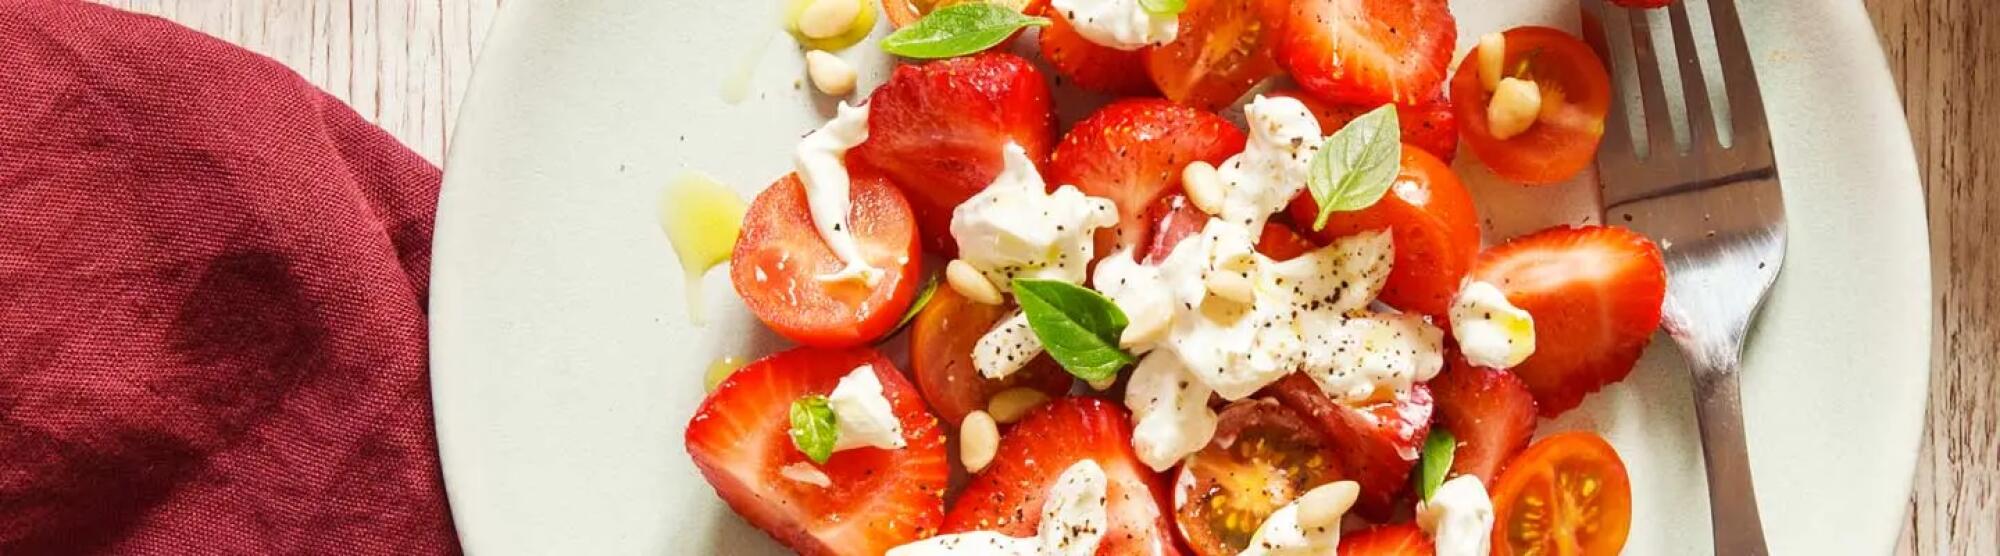 Recette : Salade de fraises et tomates cerises au fromage frais